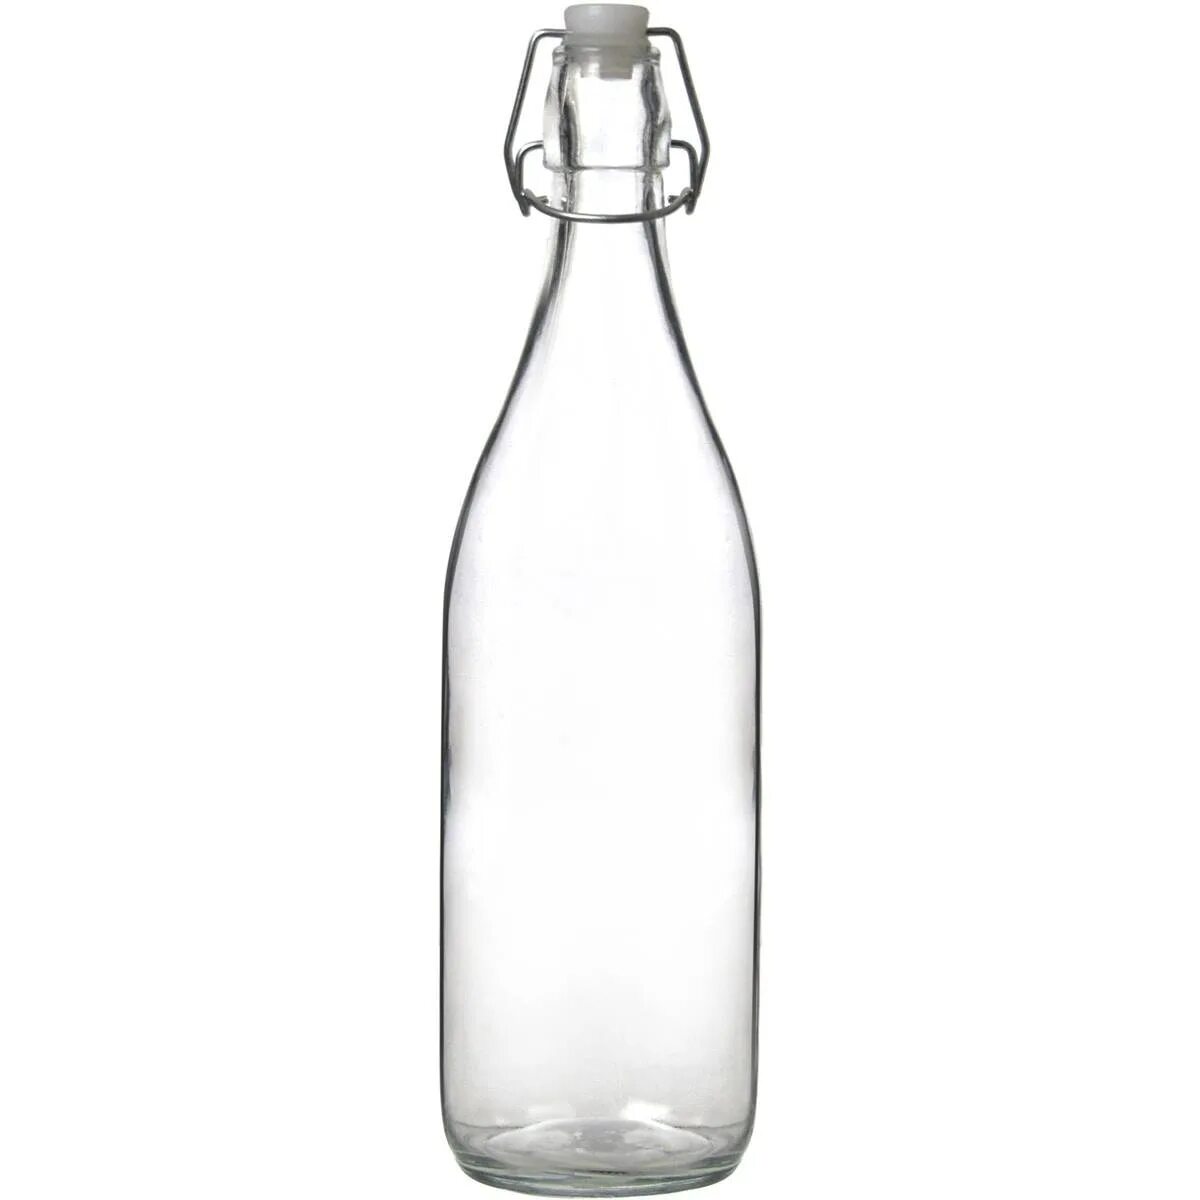 Бутылка бугель 0.5. Икеа бутылка с пробкой 0,5 бугельной 0.5. Икеа бутылка с пробкой стеклянная 0.5. Бутылка 100 мл бугель. Бутылка с крышкой стекло